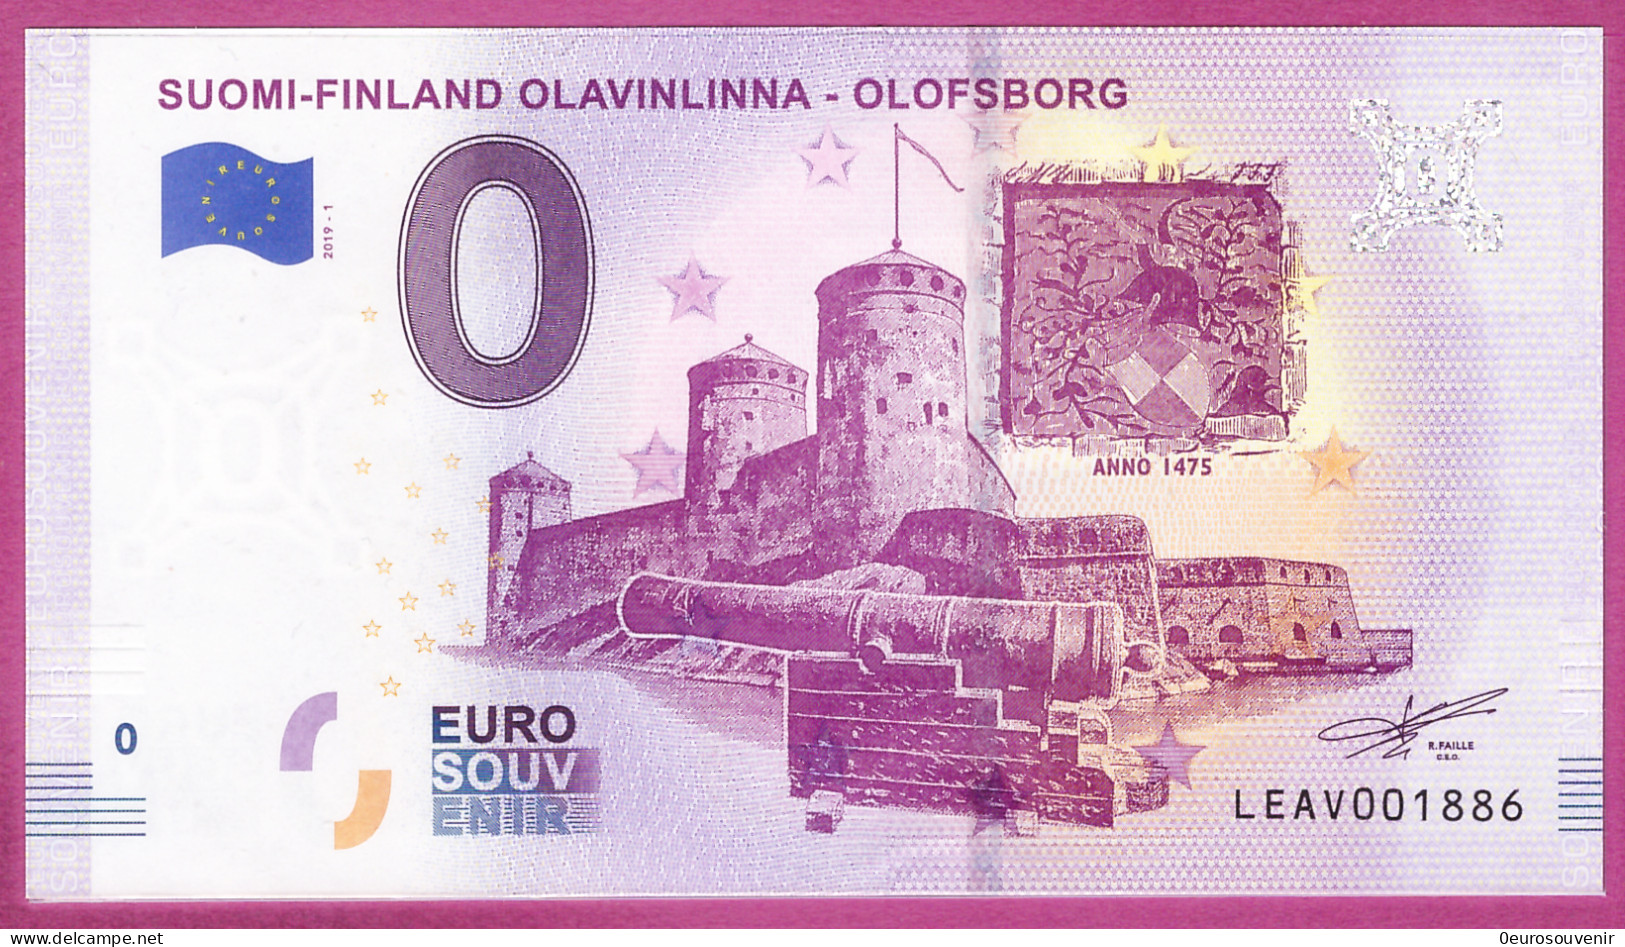 0-Euro LEAV 2019-1 SUOMI-FINLAND OLAVINLINNA - OLOFSBORG - Prove Private